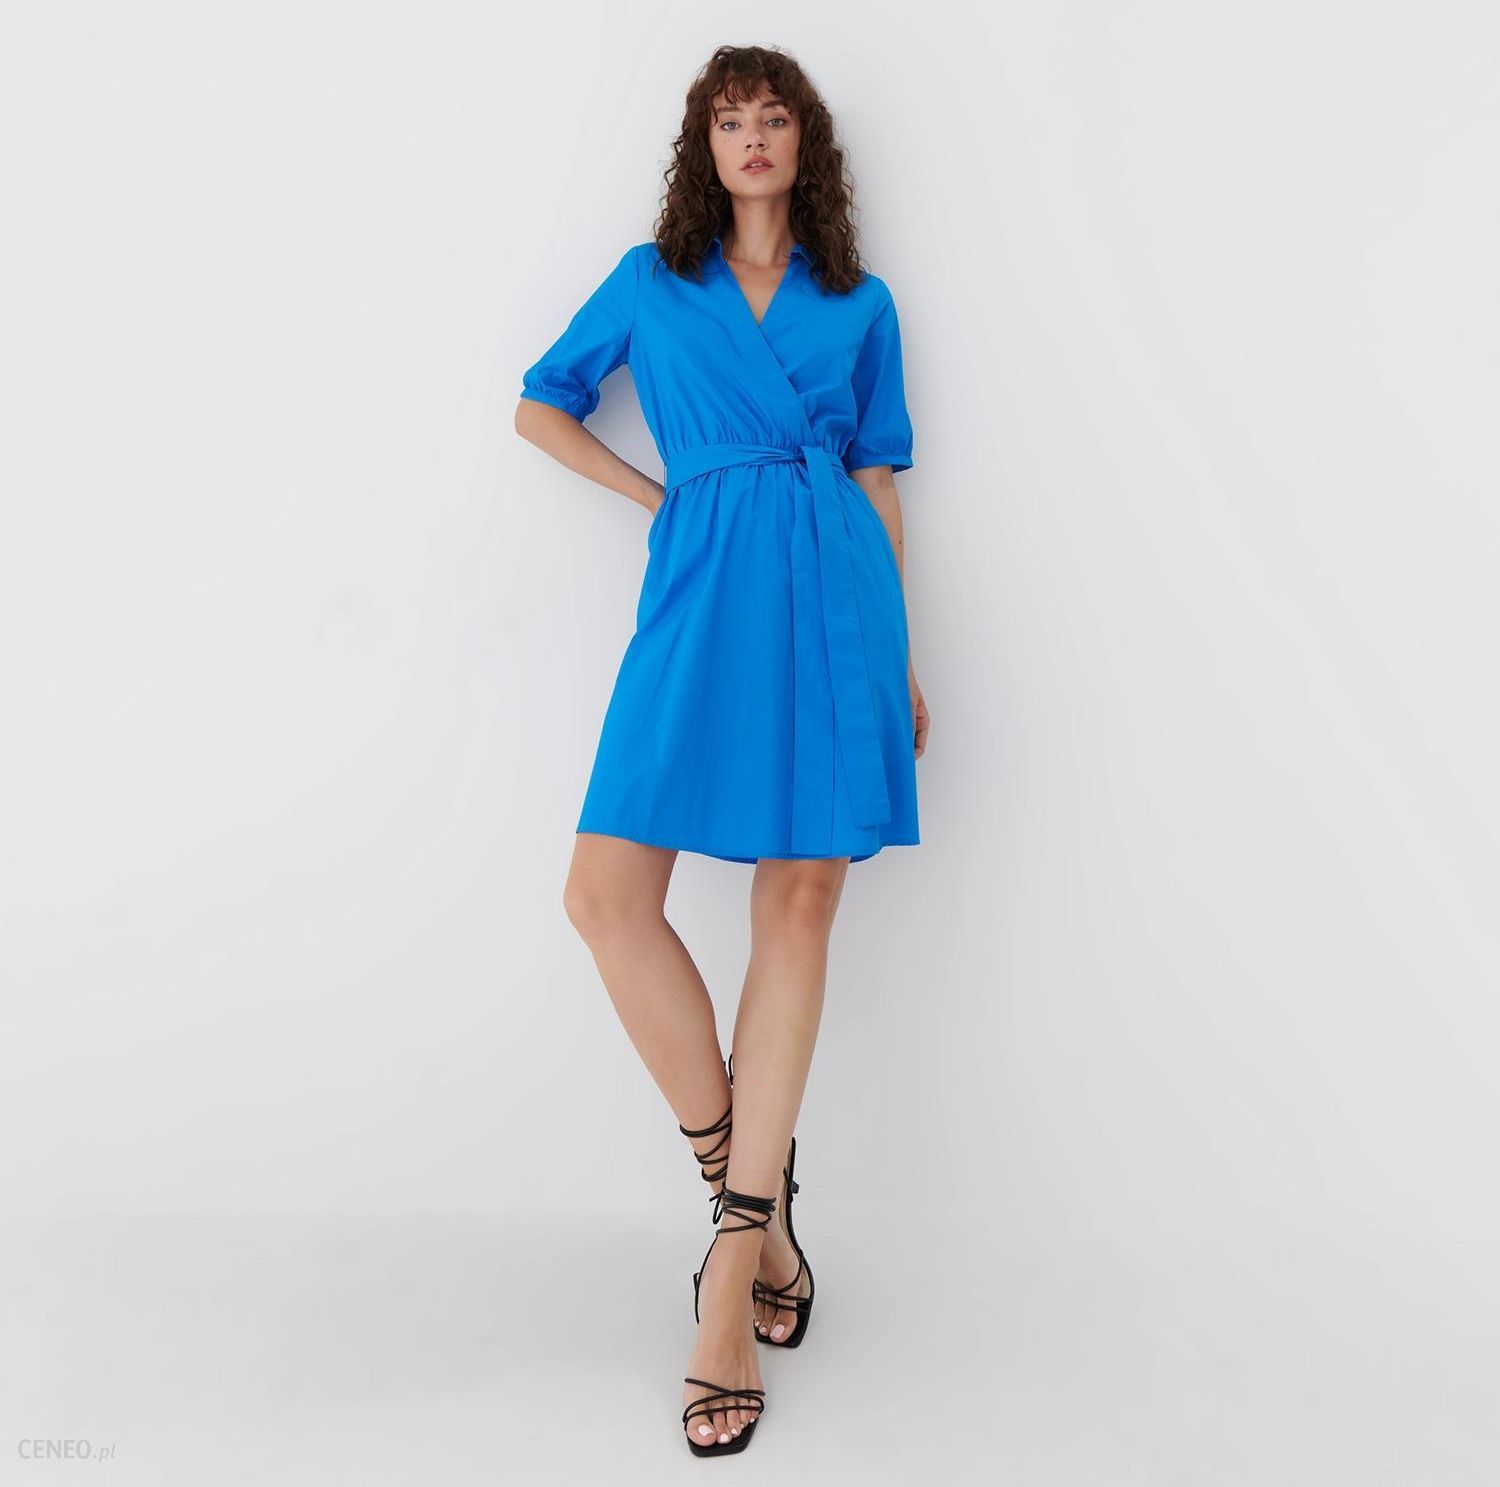 Mohito - Rozkloszowana Sukienka - Niebieski - Ceny i opinie 